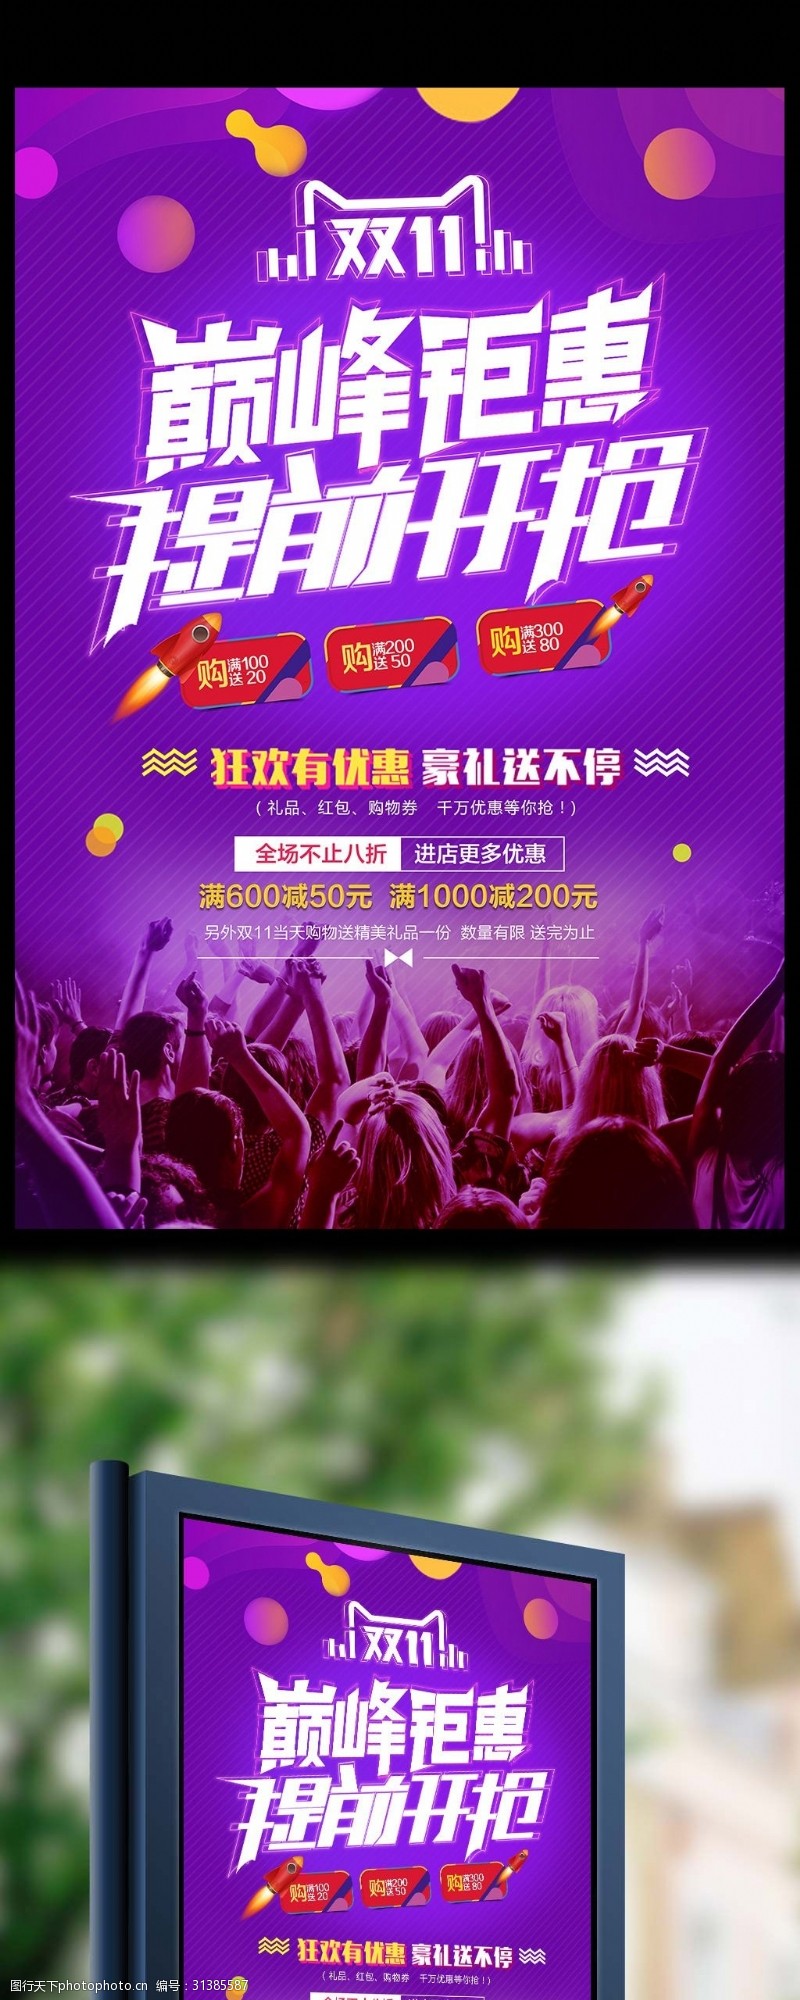 新年限时特惠2017高端炫彩双十一提前开抢促销海报